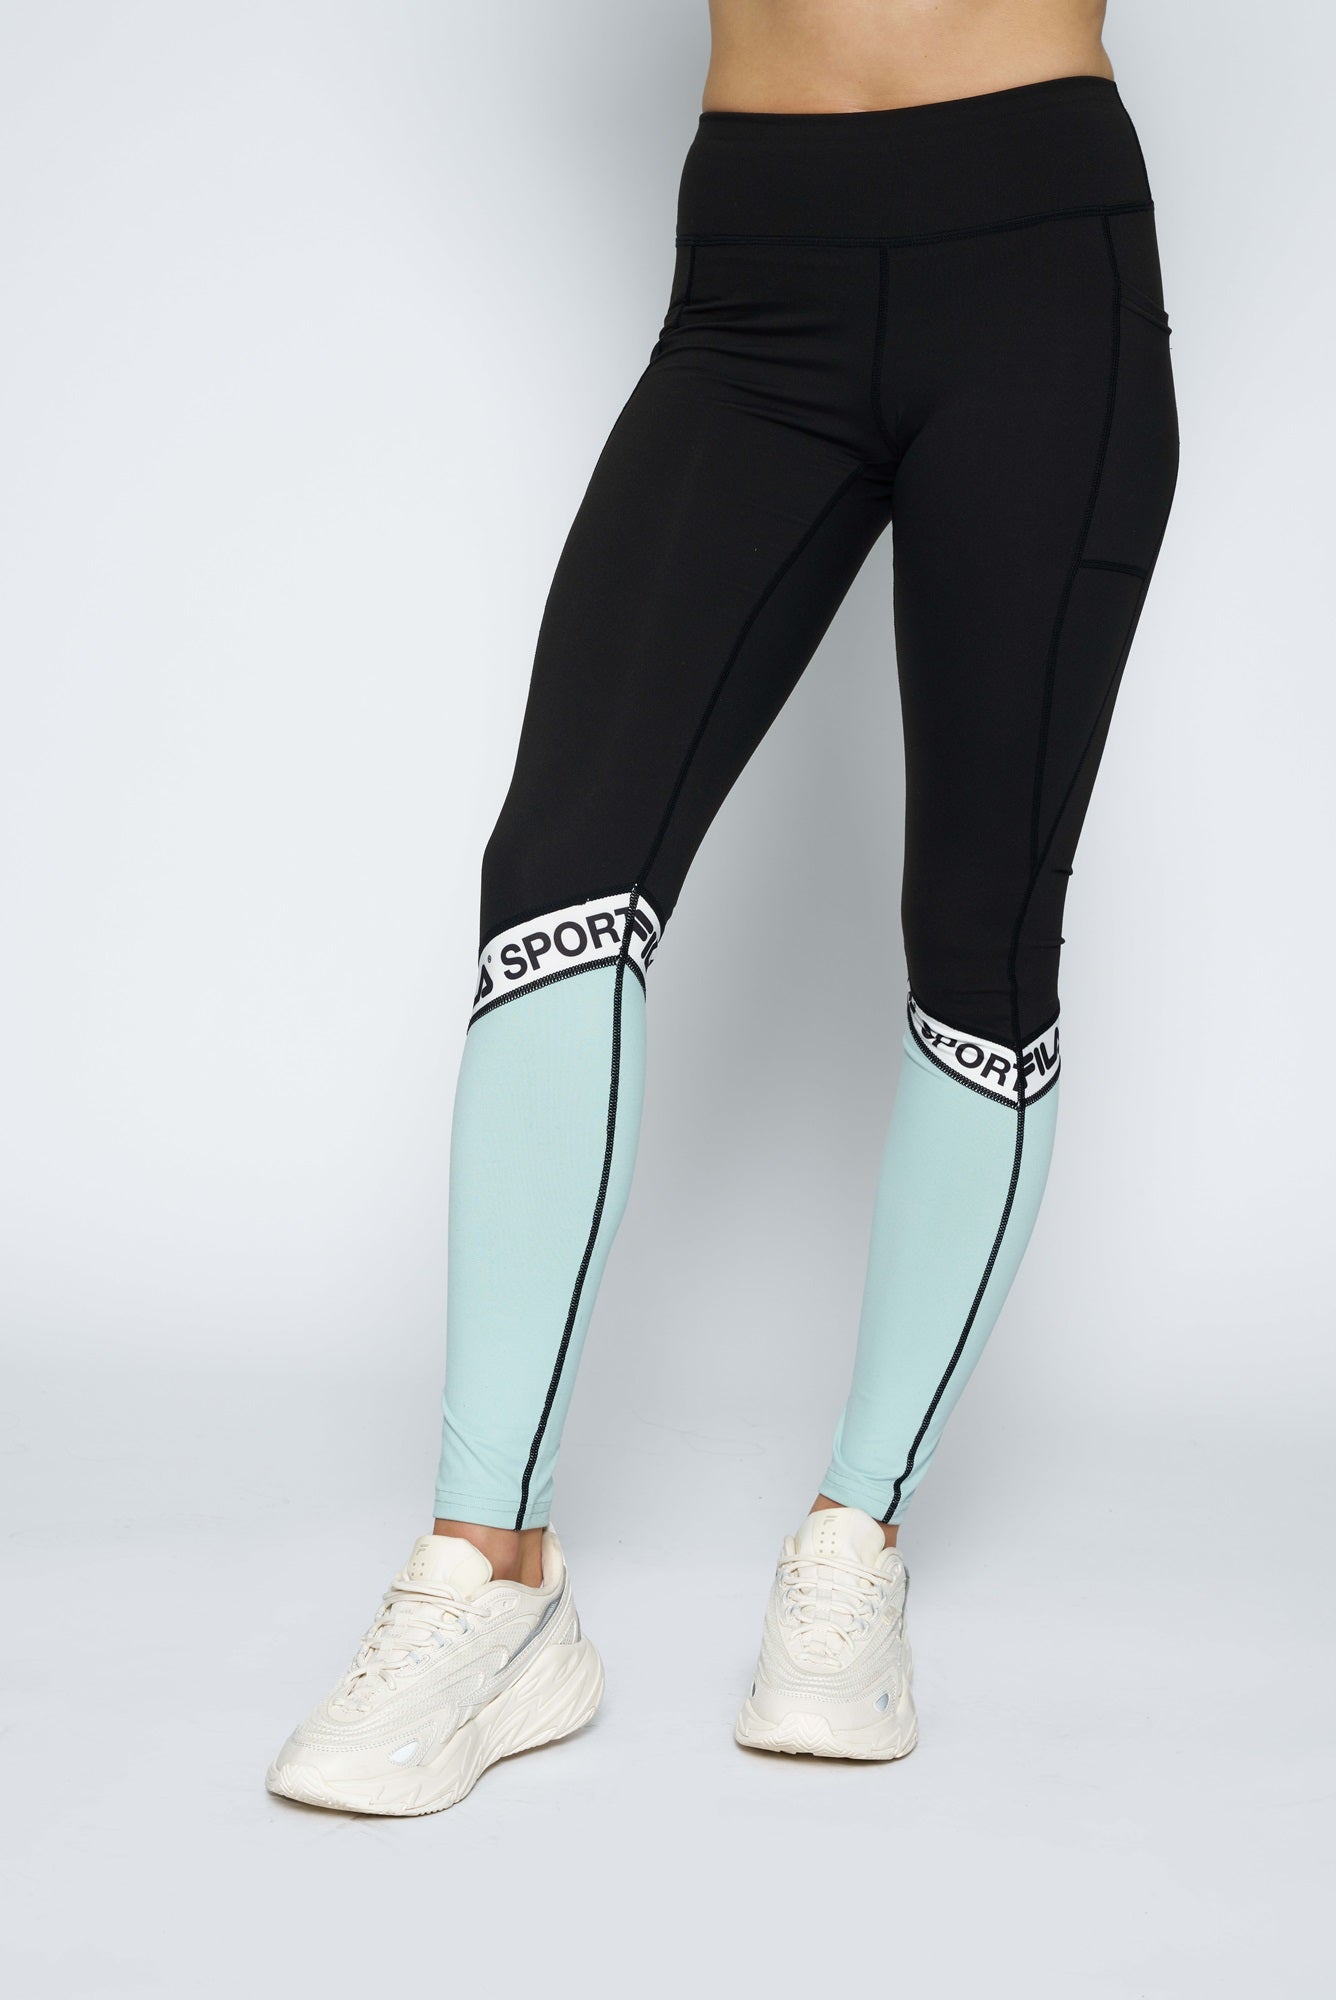 Fila, Pants & Jumpsuits, Tek Gear Shapewear Athletic Leggings